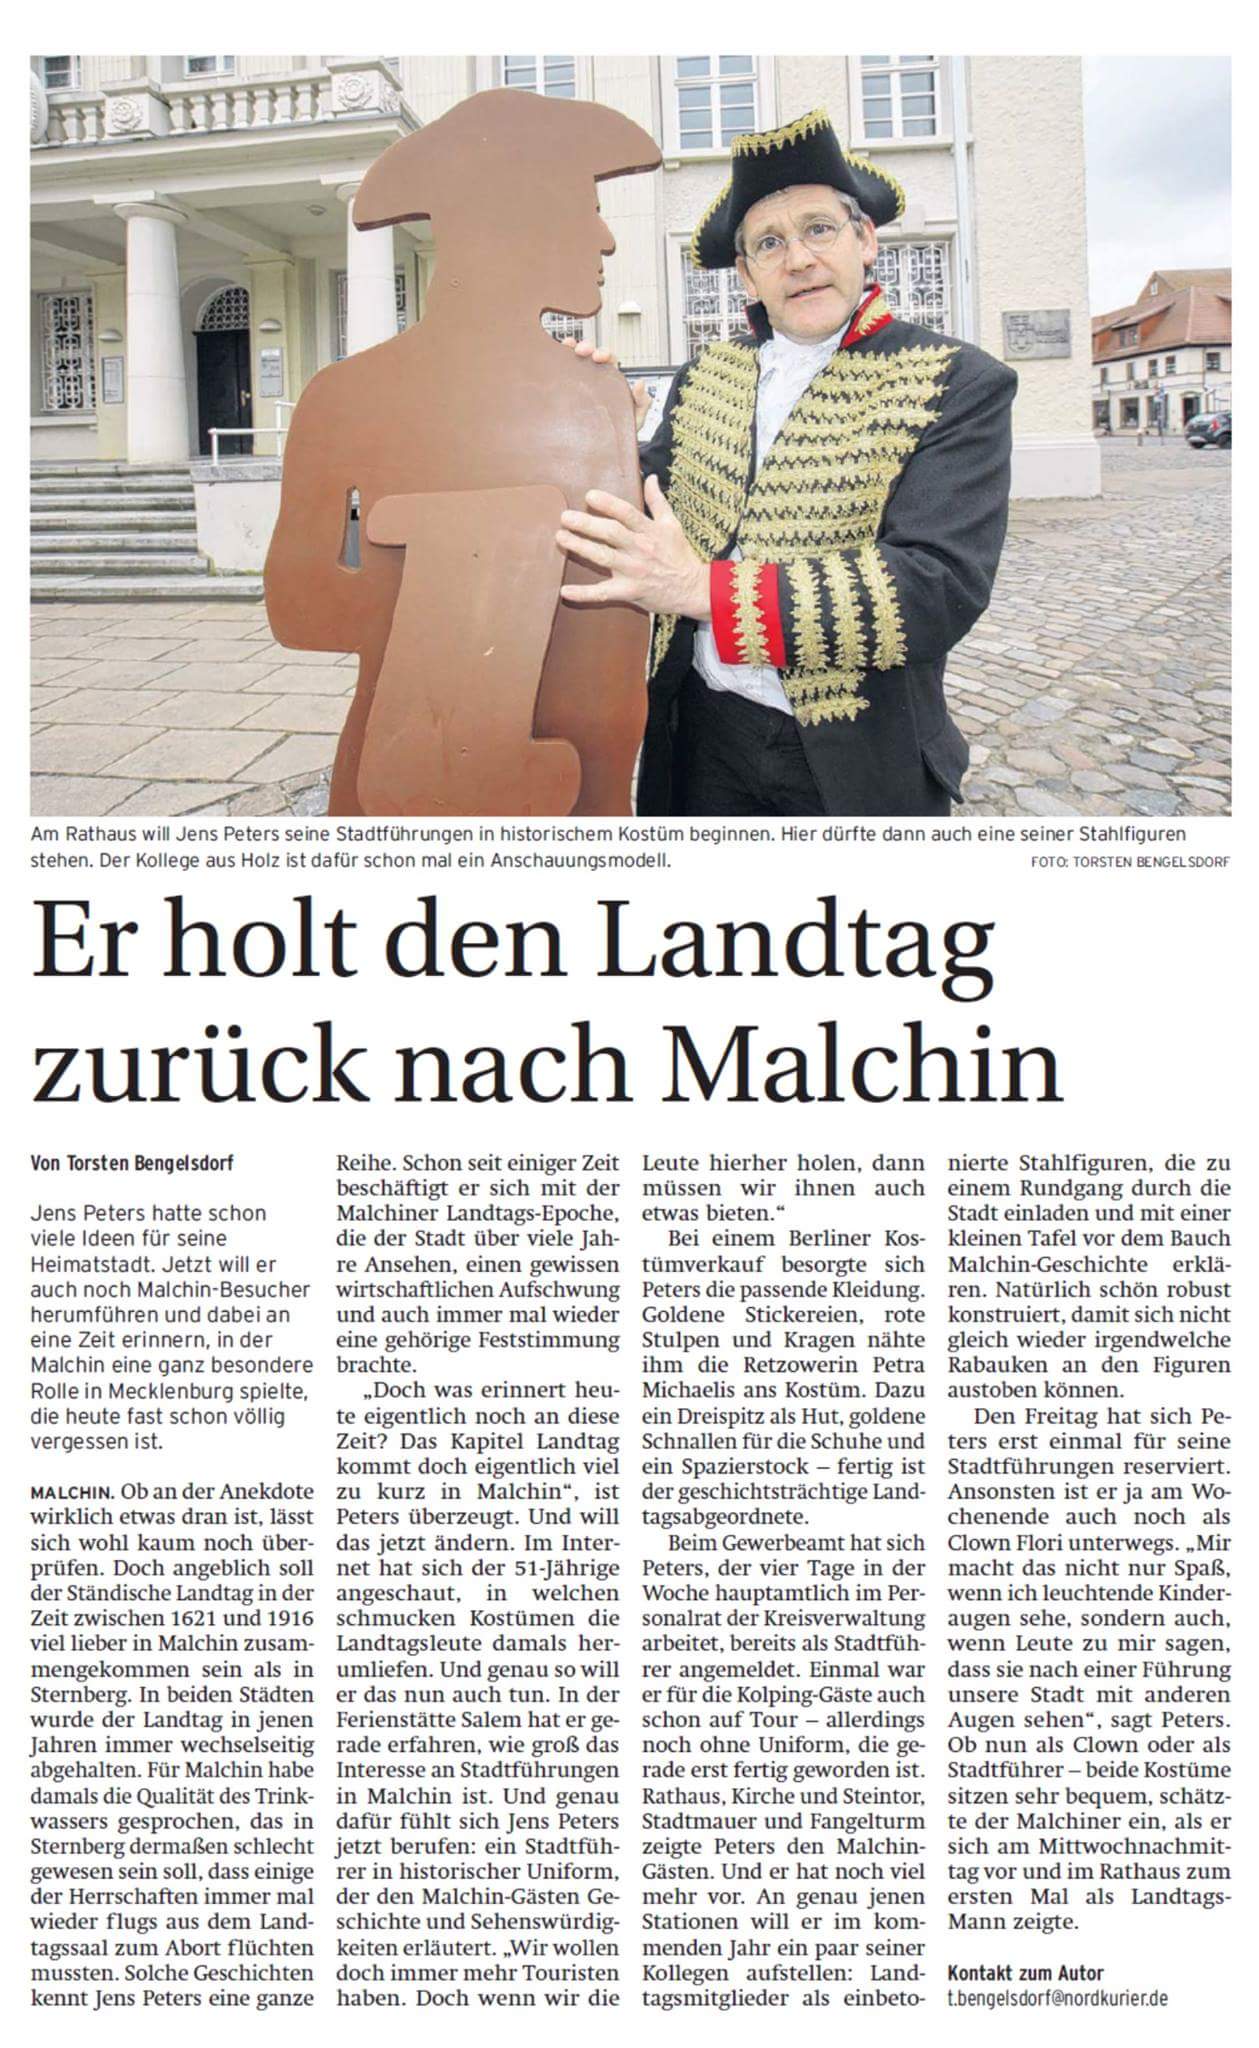 Landtag zurueck nach Malchin